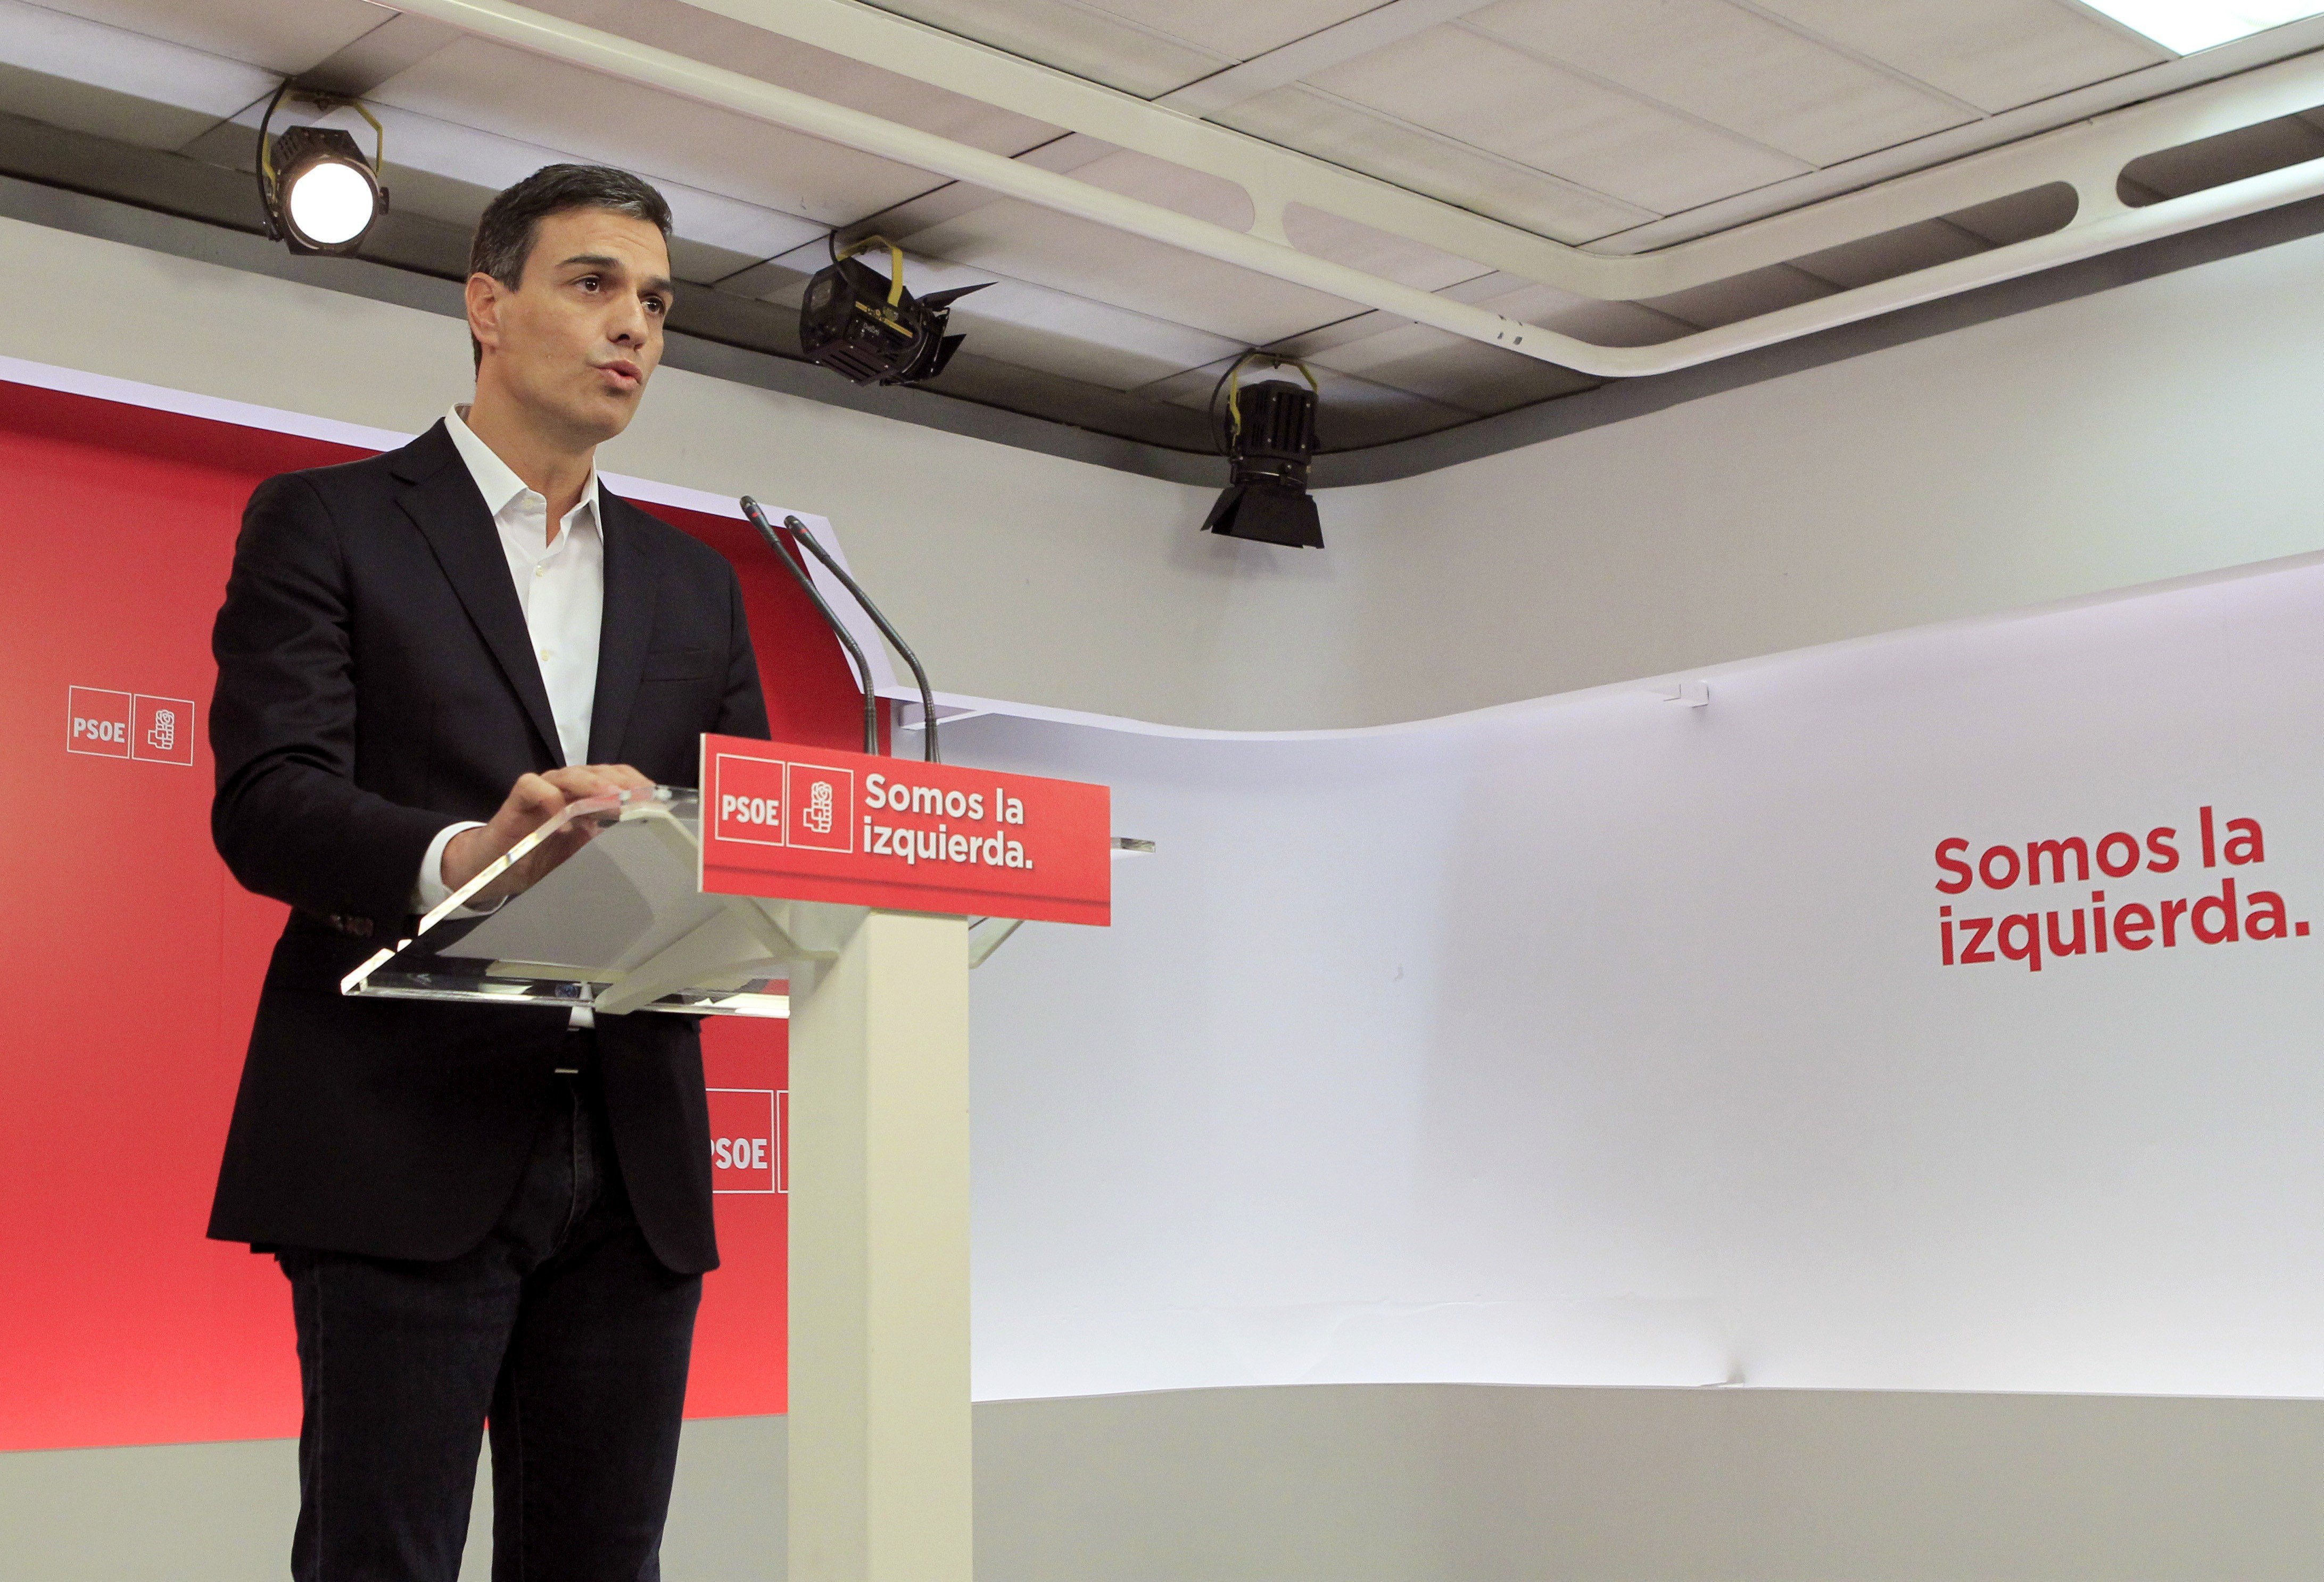 Sánchez: "Apoyaremos la respuesta a la ruptura unilateral con el Estado de derecho"